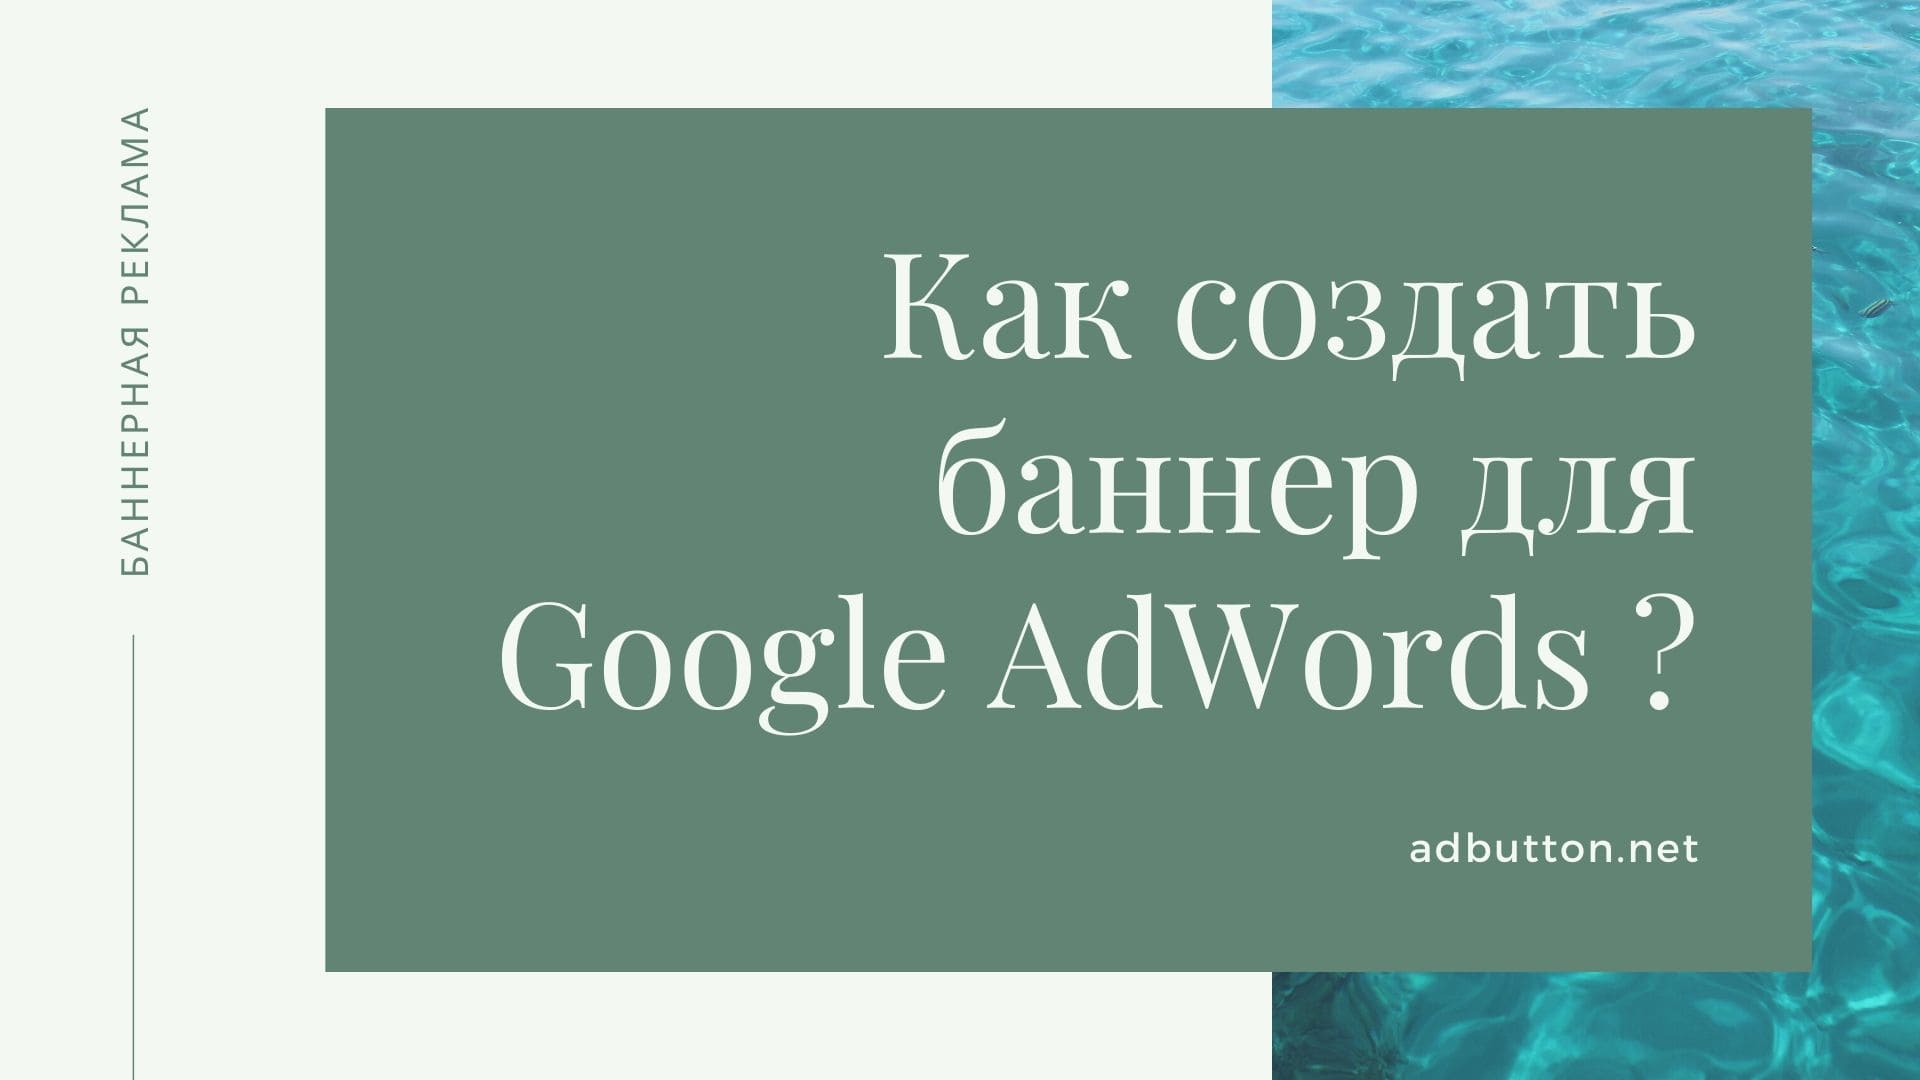 Создание баннеров для сайта и запуск кампании в КМС Google AdWords